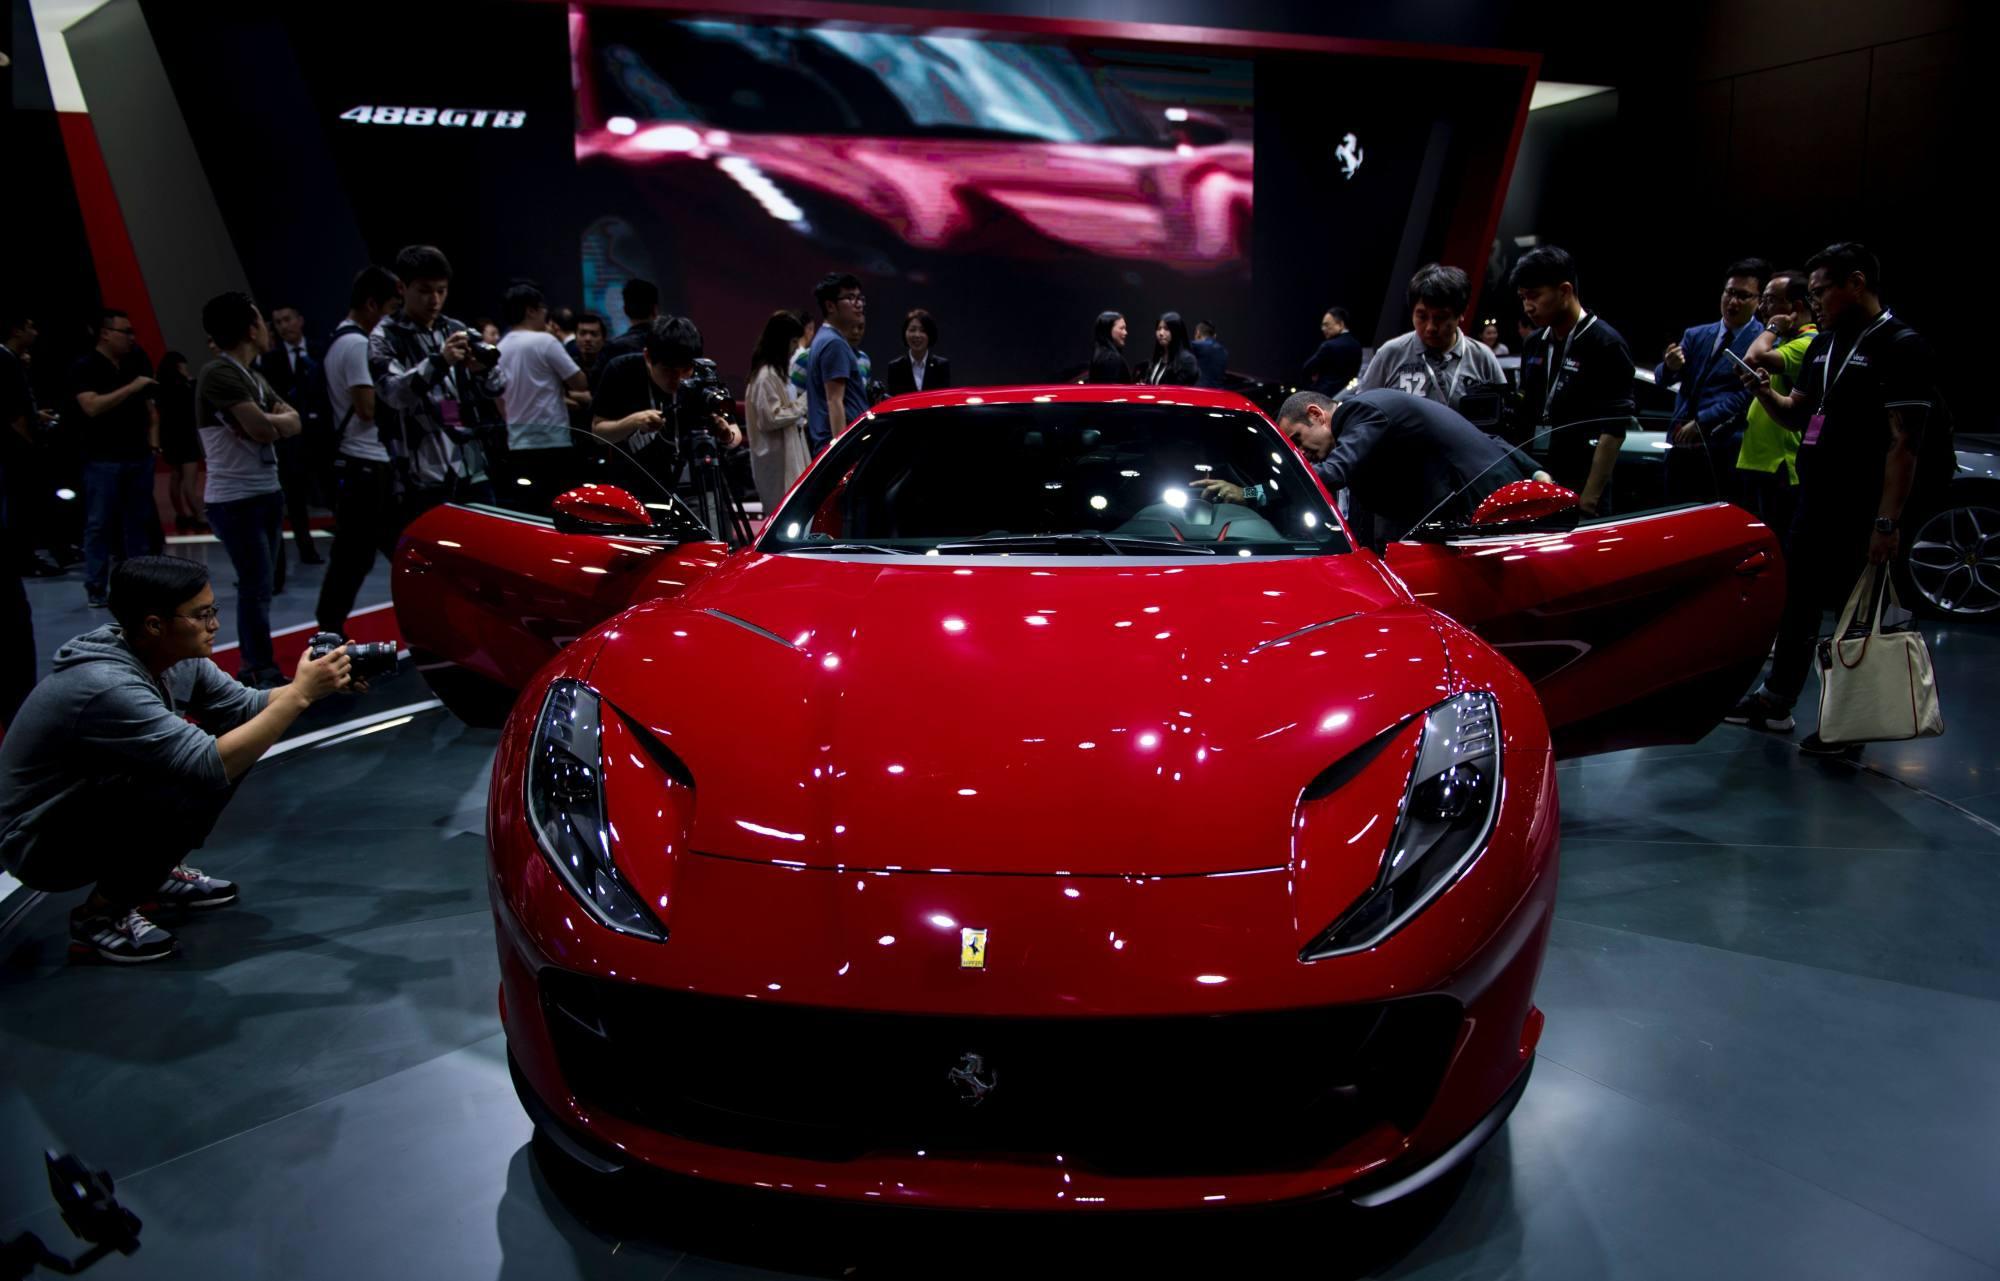 Phụ nữ tại quốc gia gần sát Việt Nam đang mua Ferrari nhiều nhất thế giới: Trung bình cứ 4 chiếc sẽ có 1 tài xế nữ - Ảnh 2.